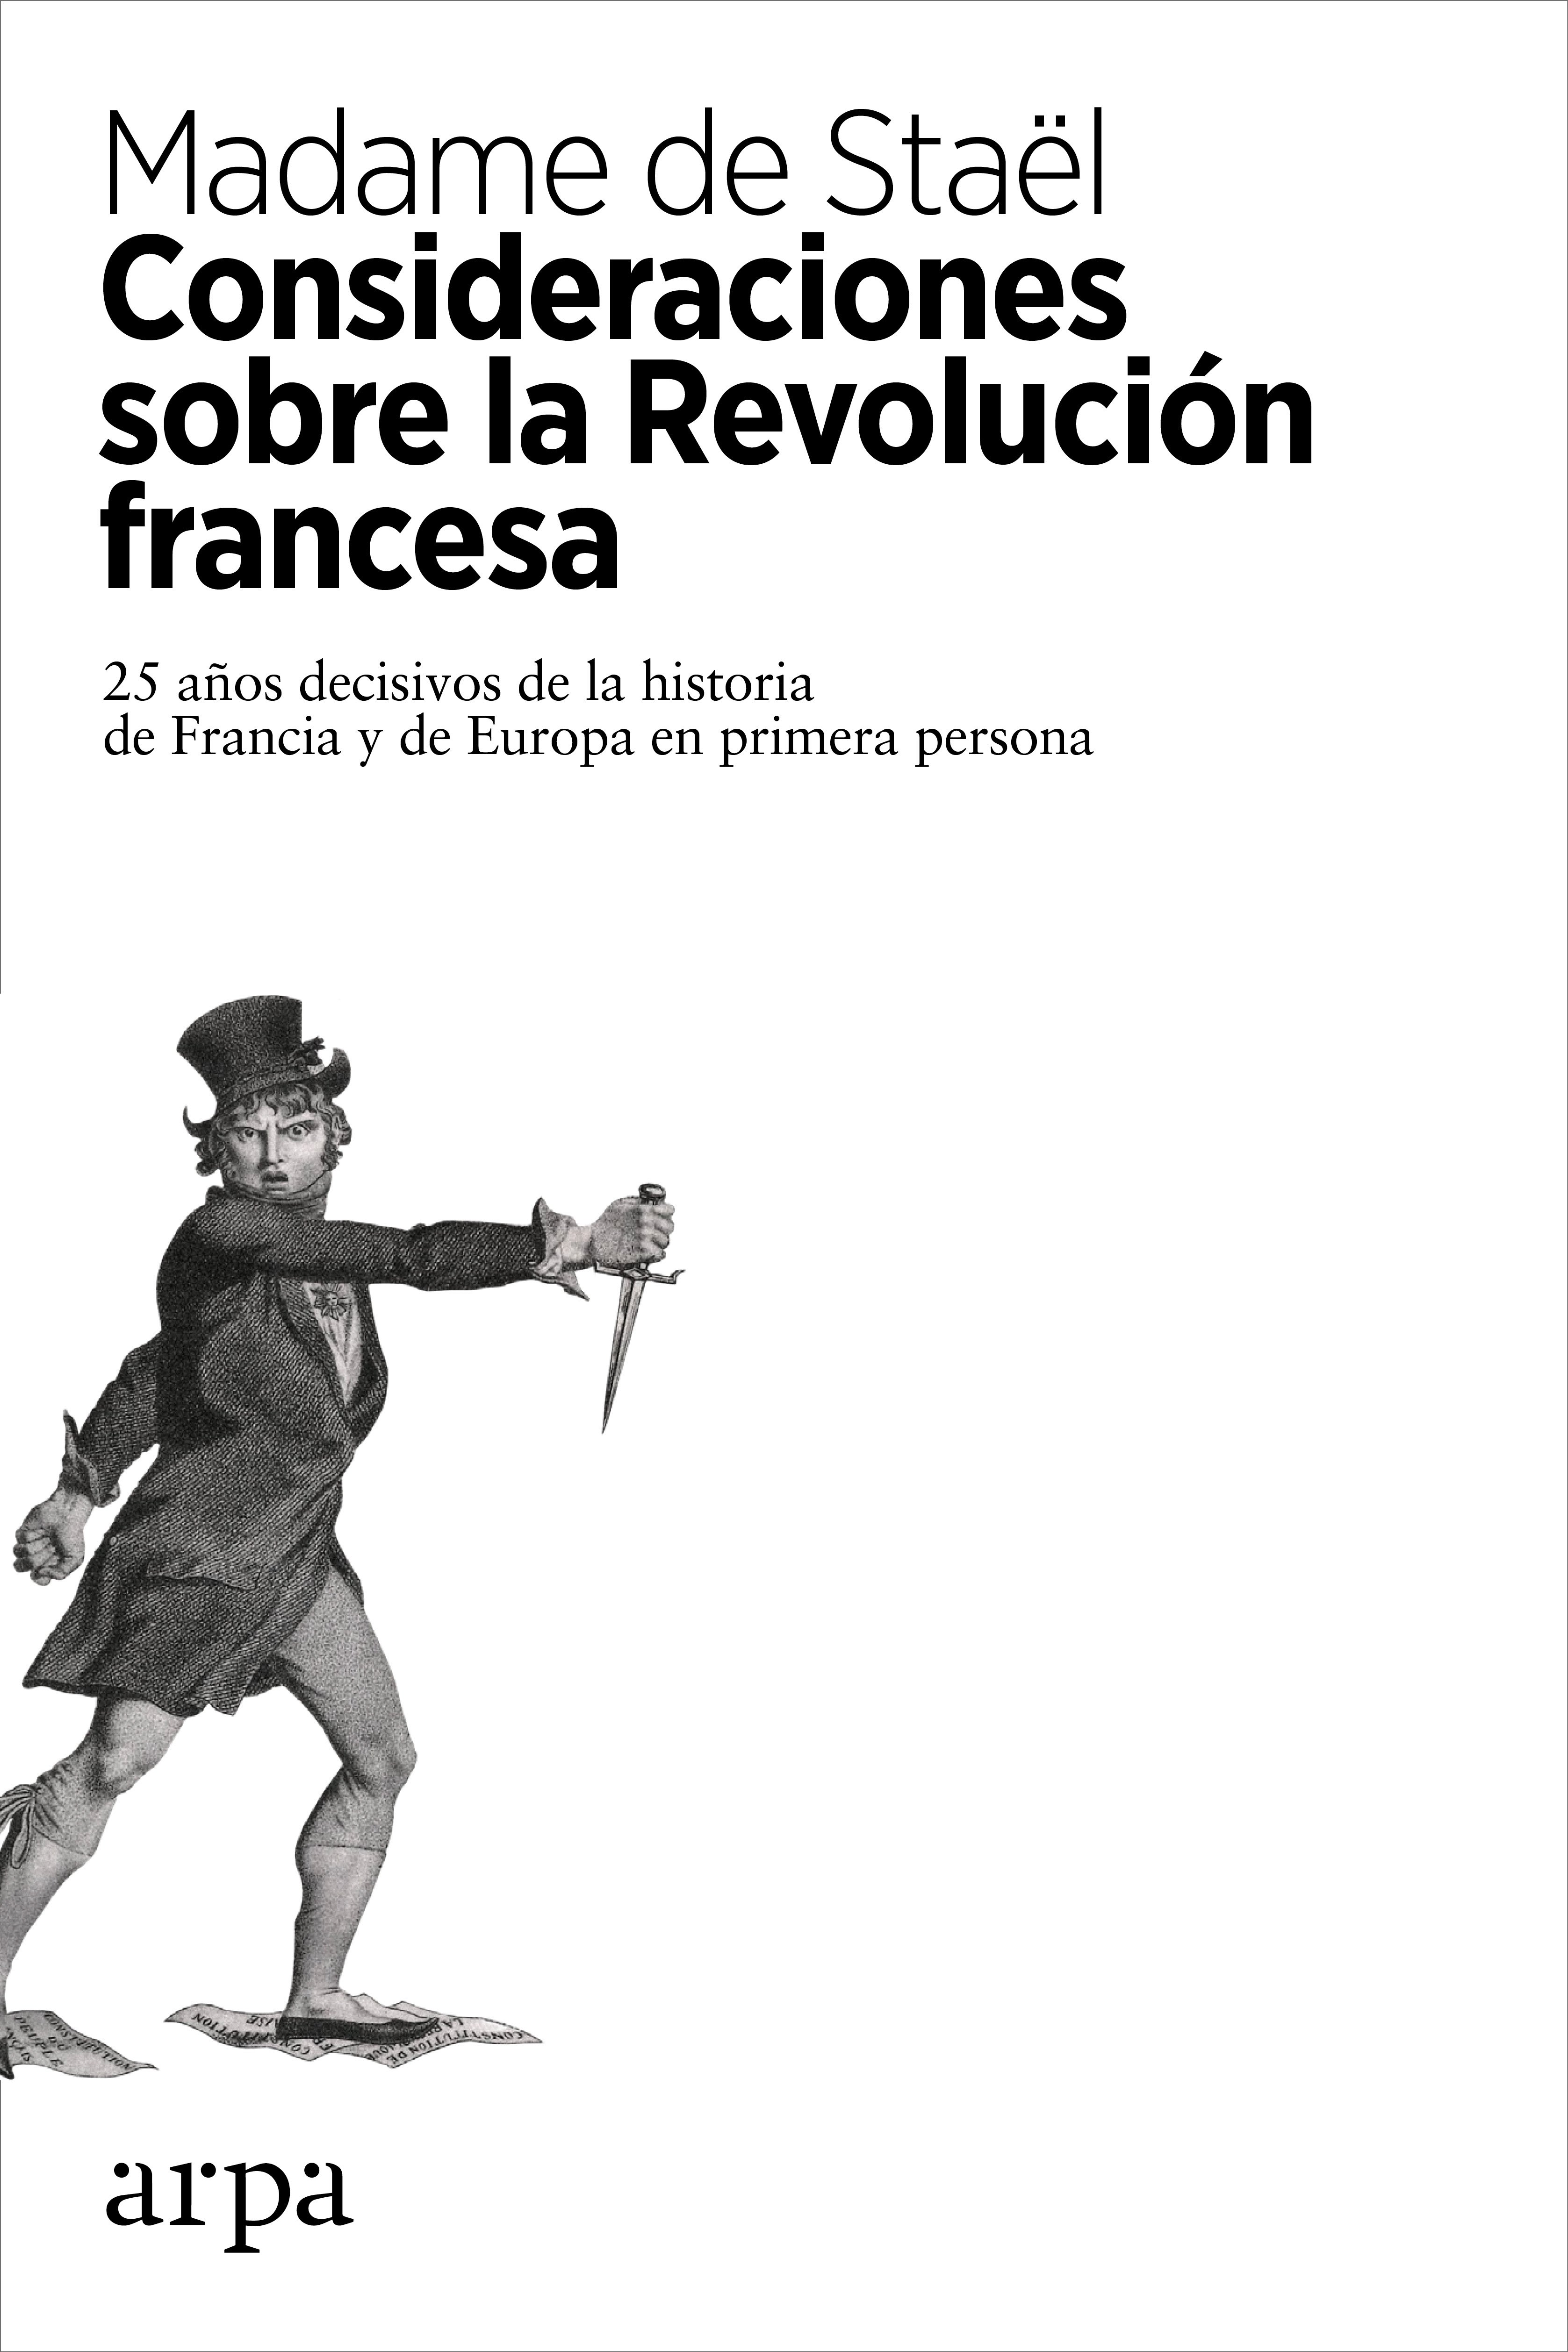 Consideraciones sobre la Revolución francesa :: Libelista